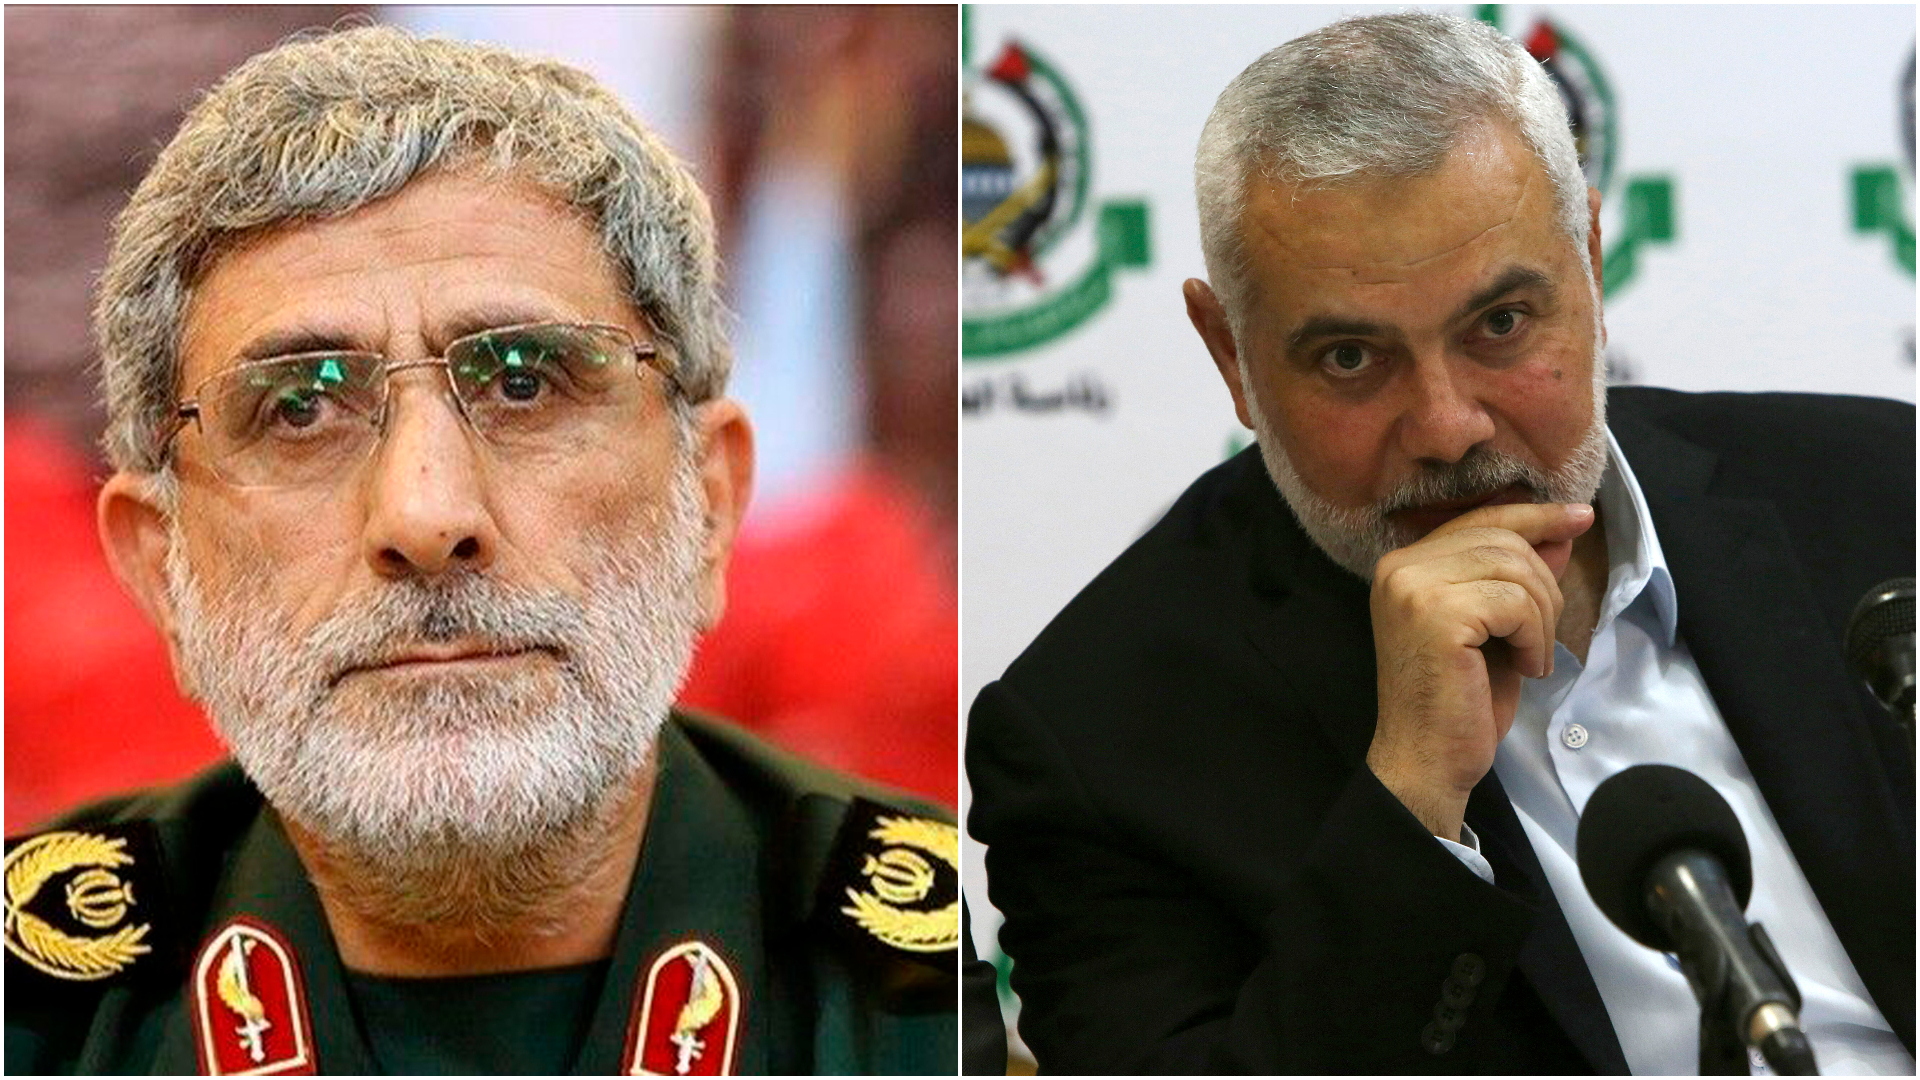 Leader hamas Hamas leader